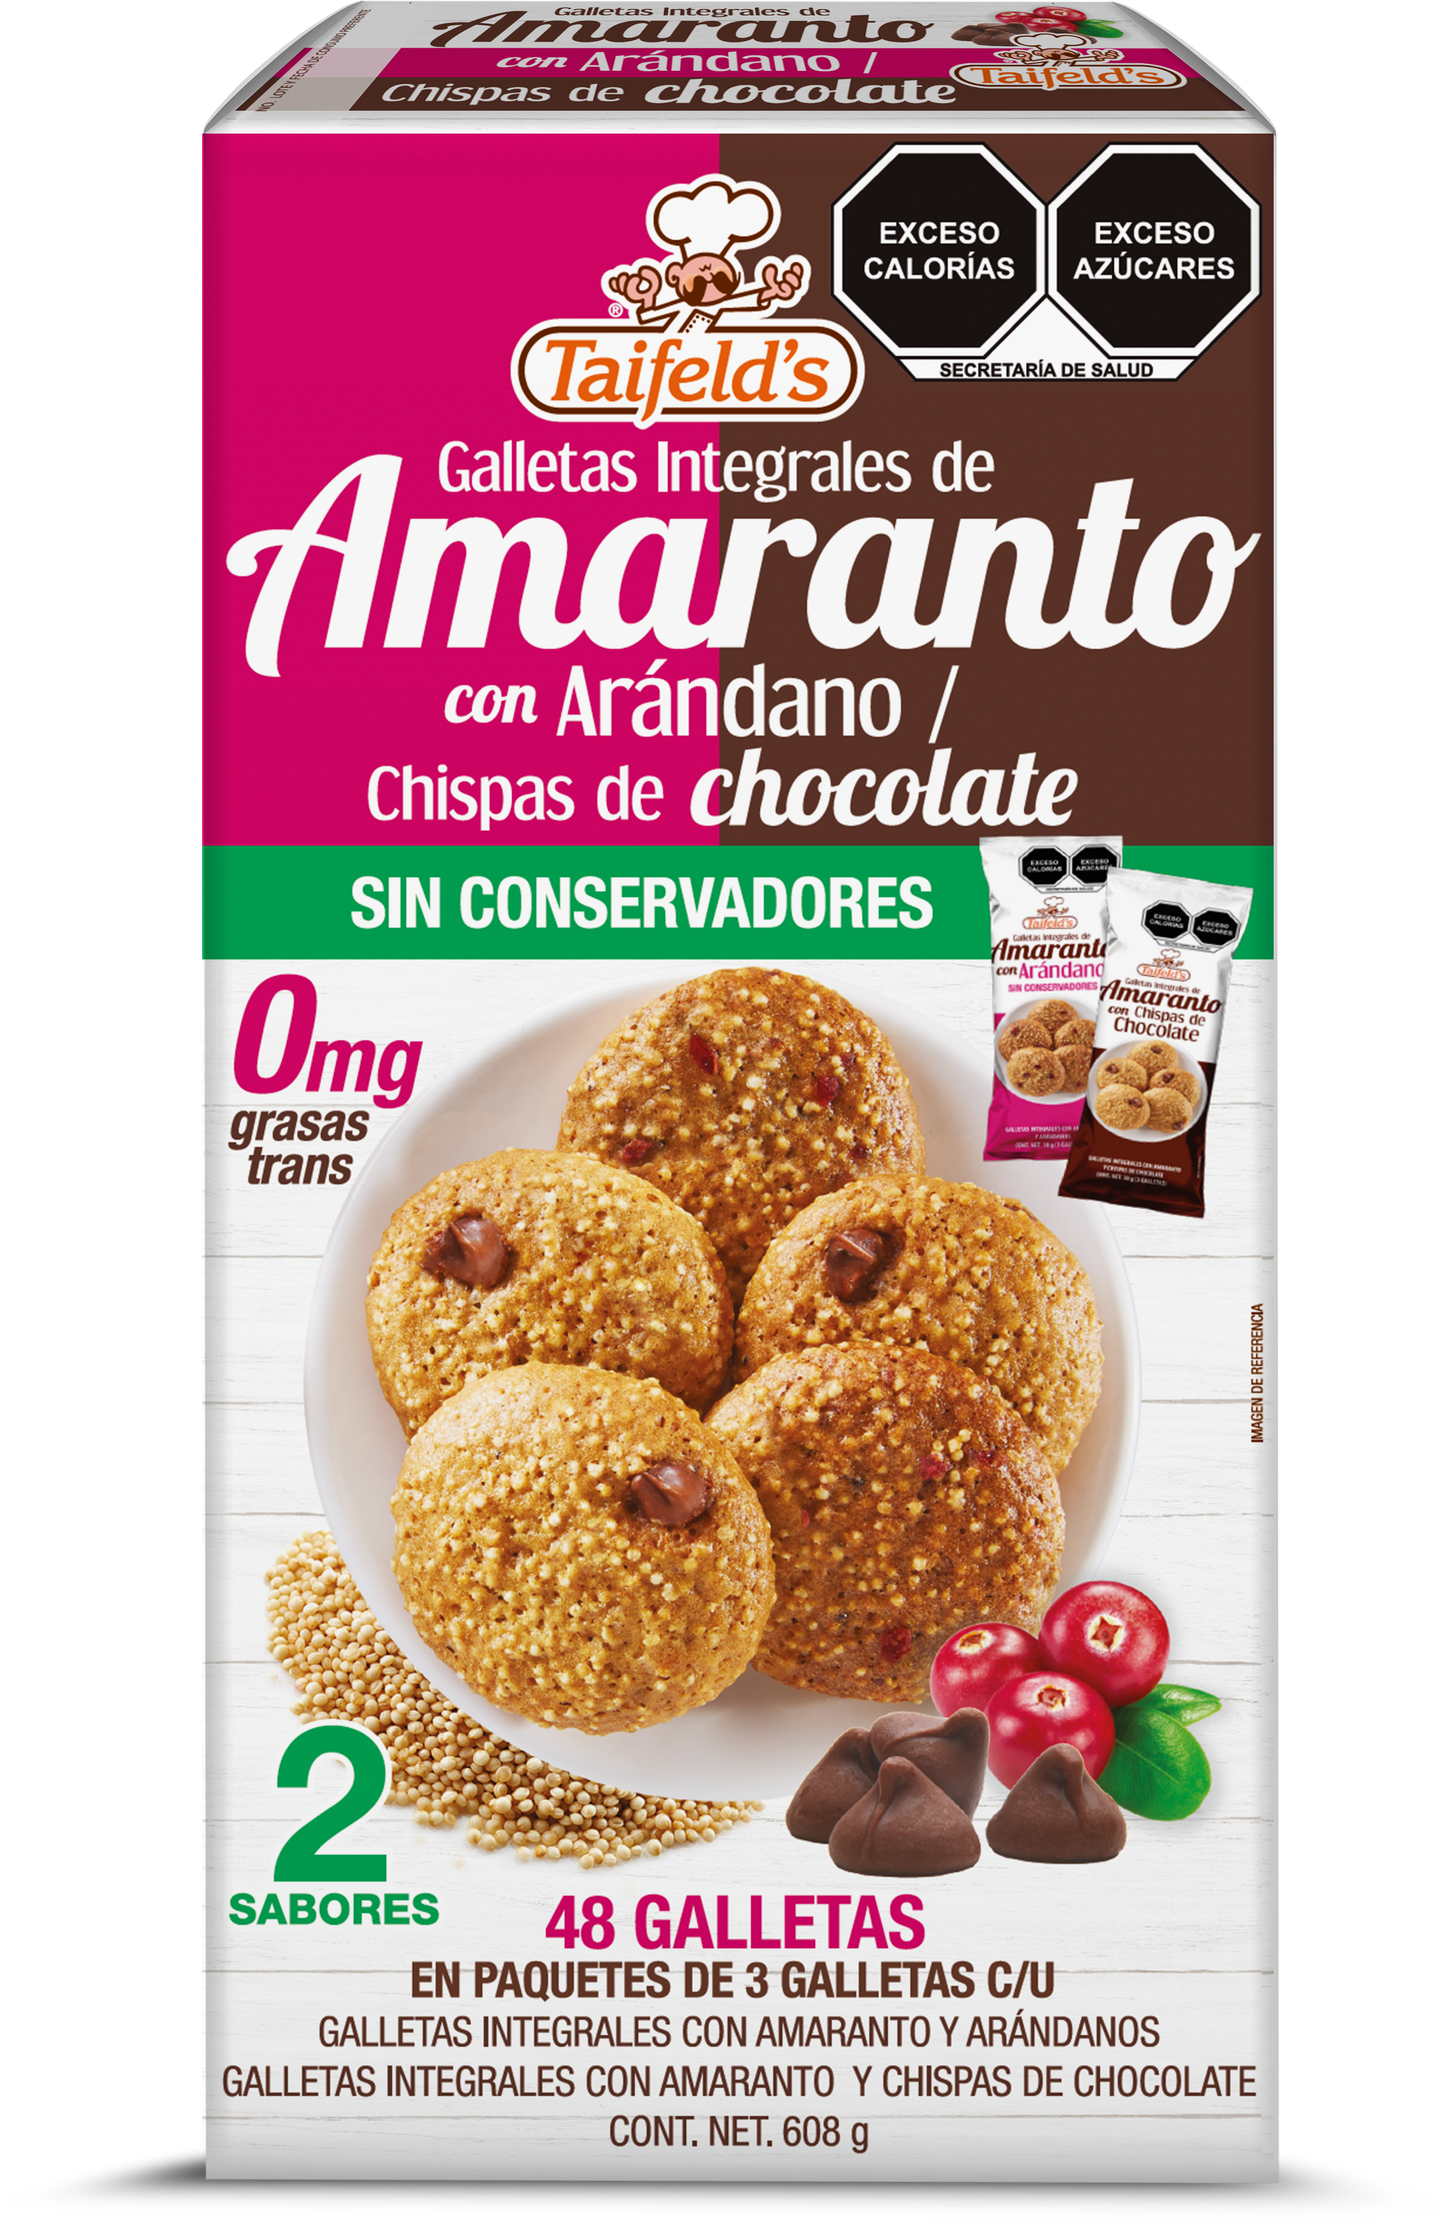 Galletas de Amaranto con arándanos/chispas de chocolate